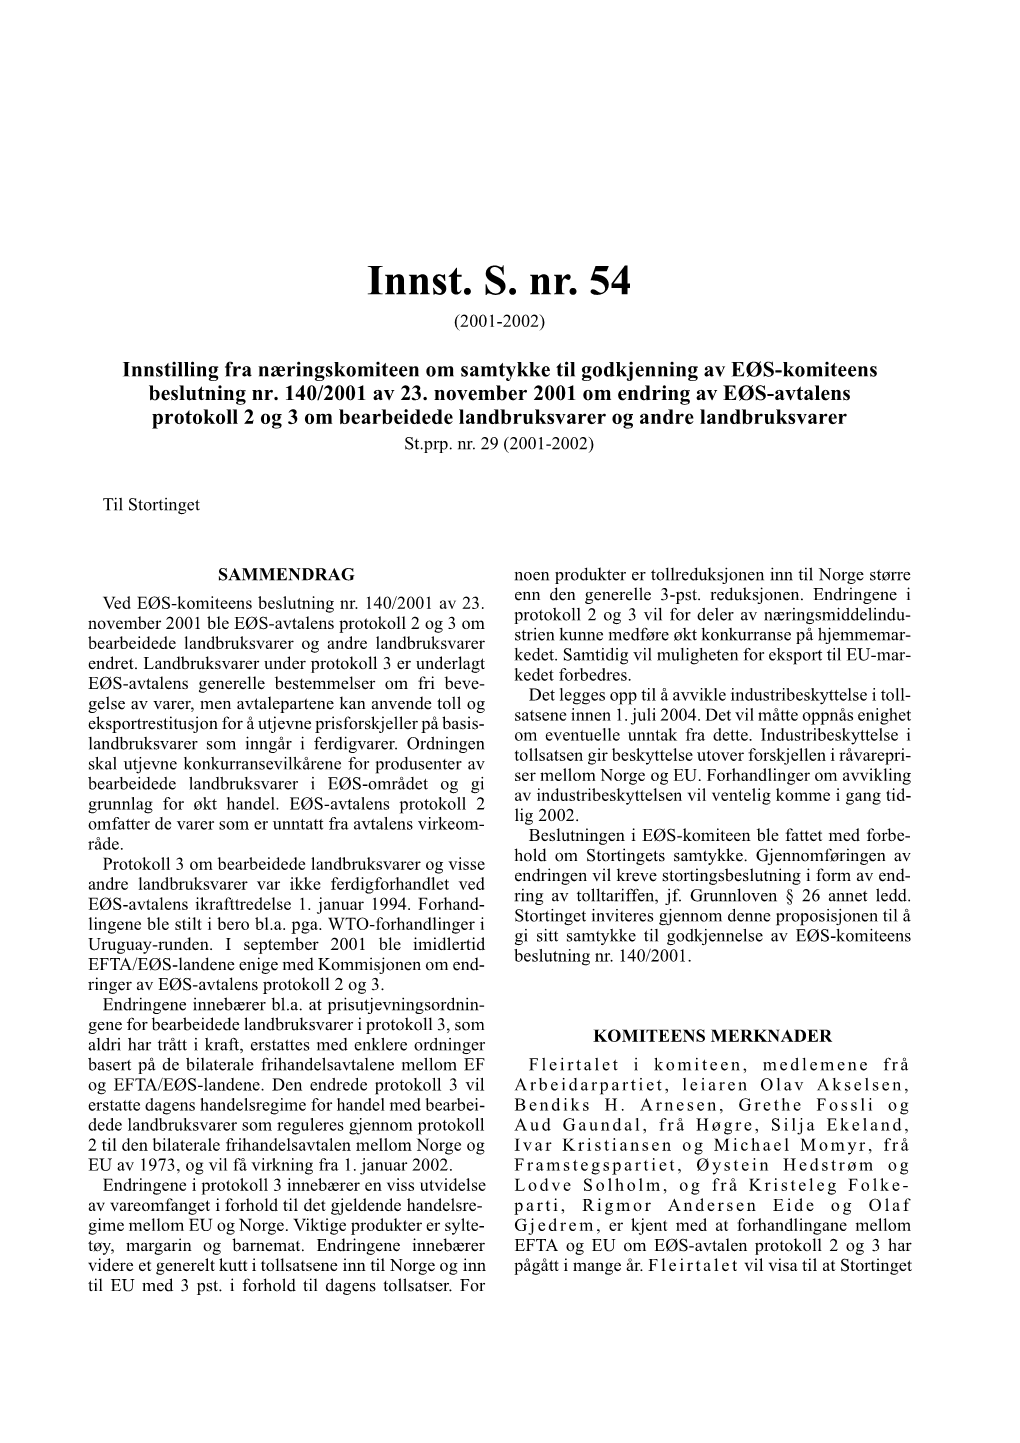 Innst. S. Nr. 54 (2001-2002)